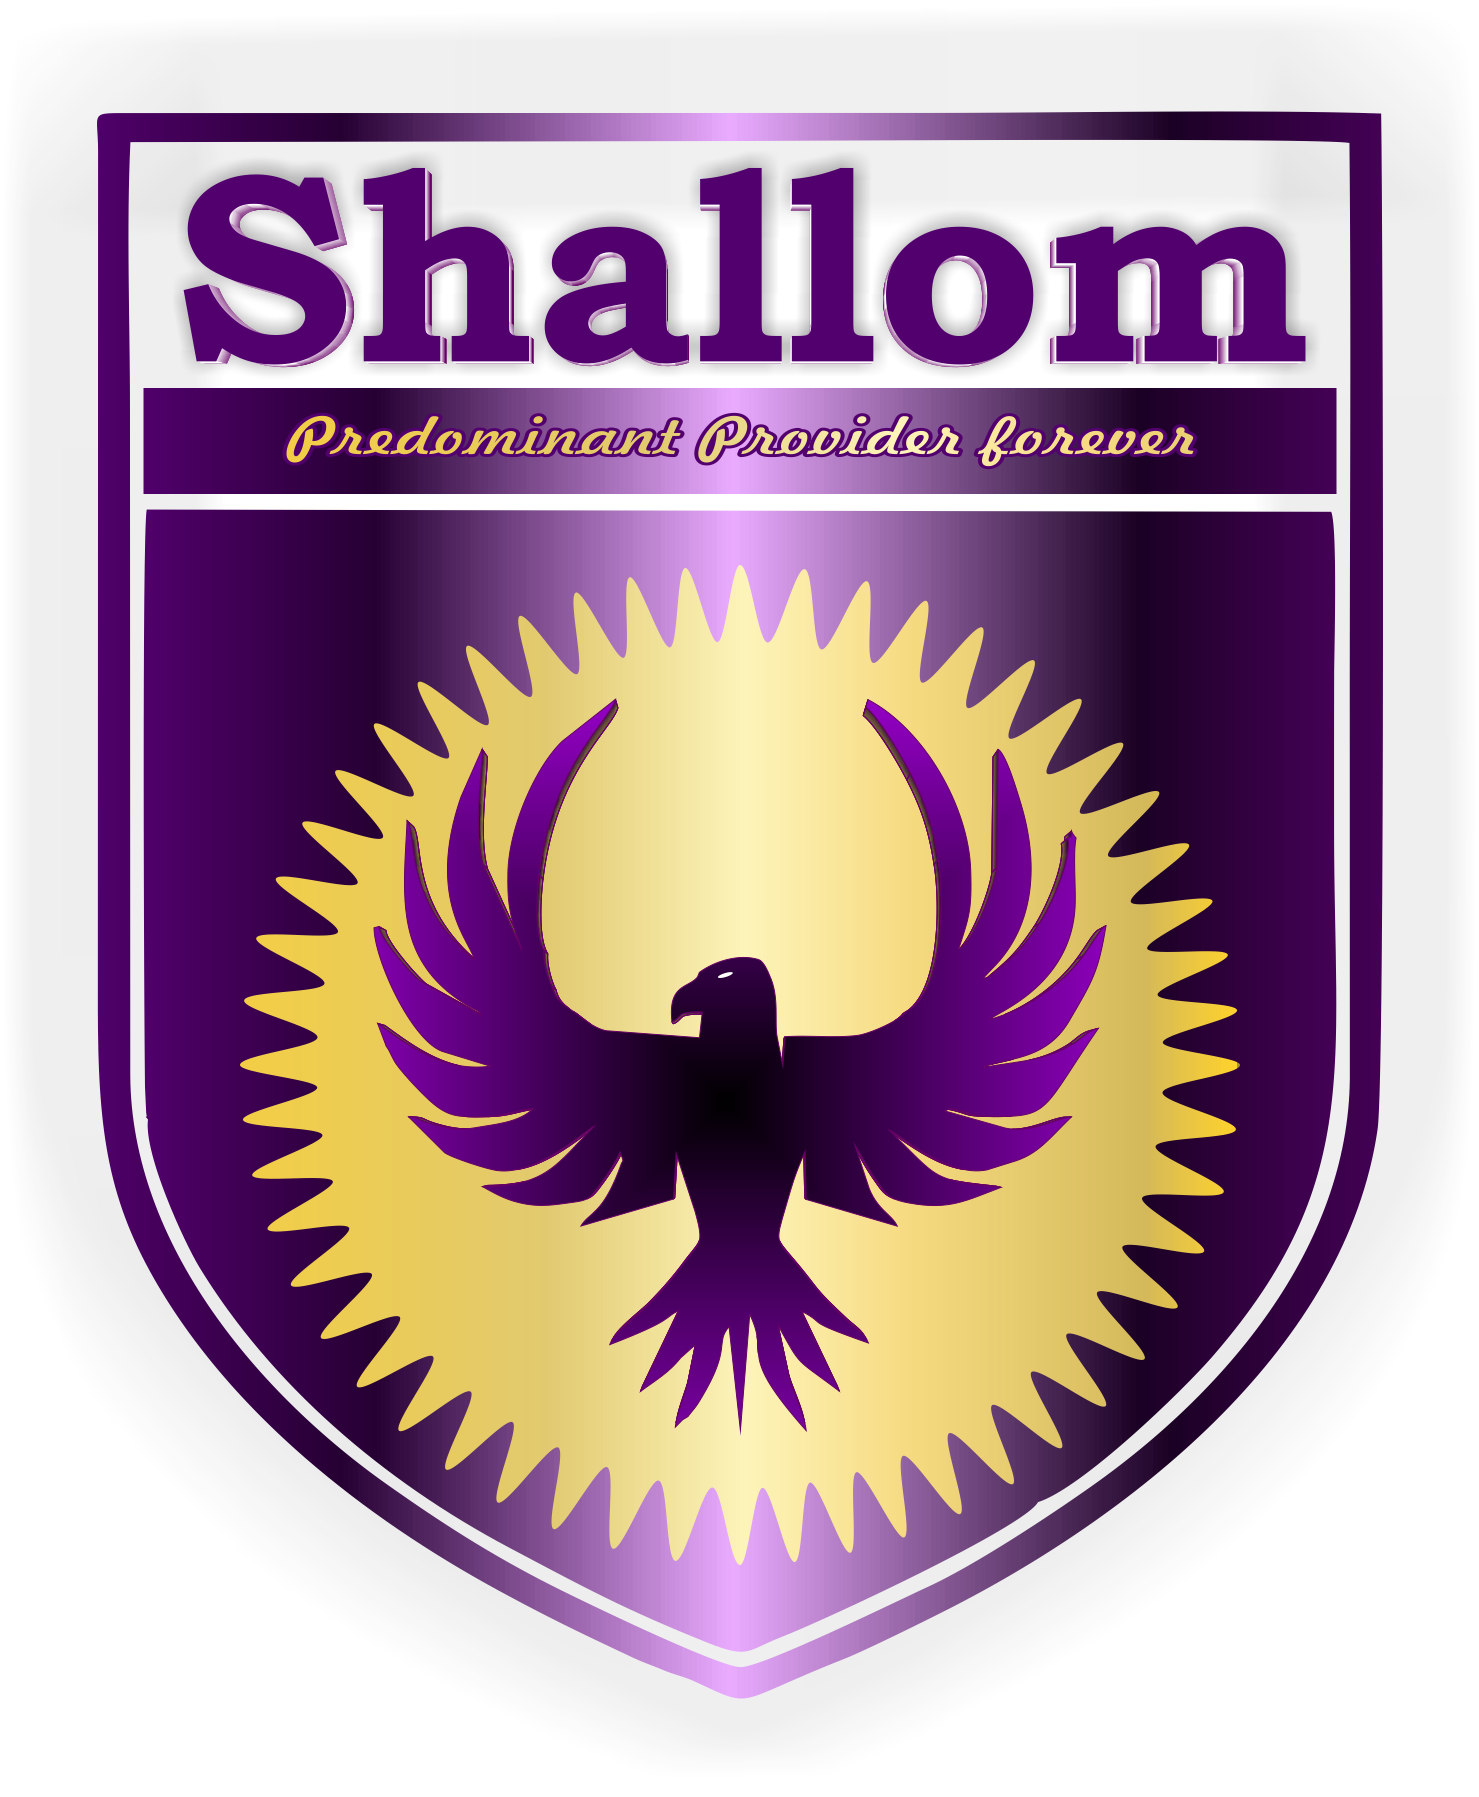 Shallom logo